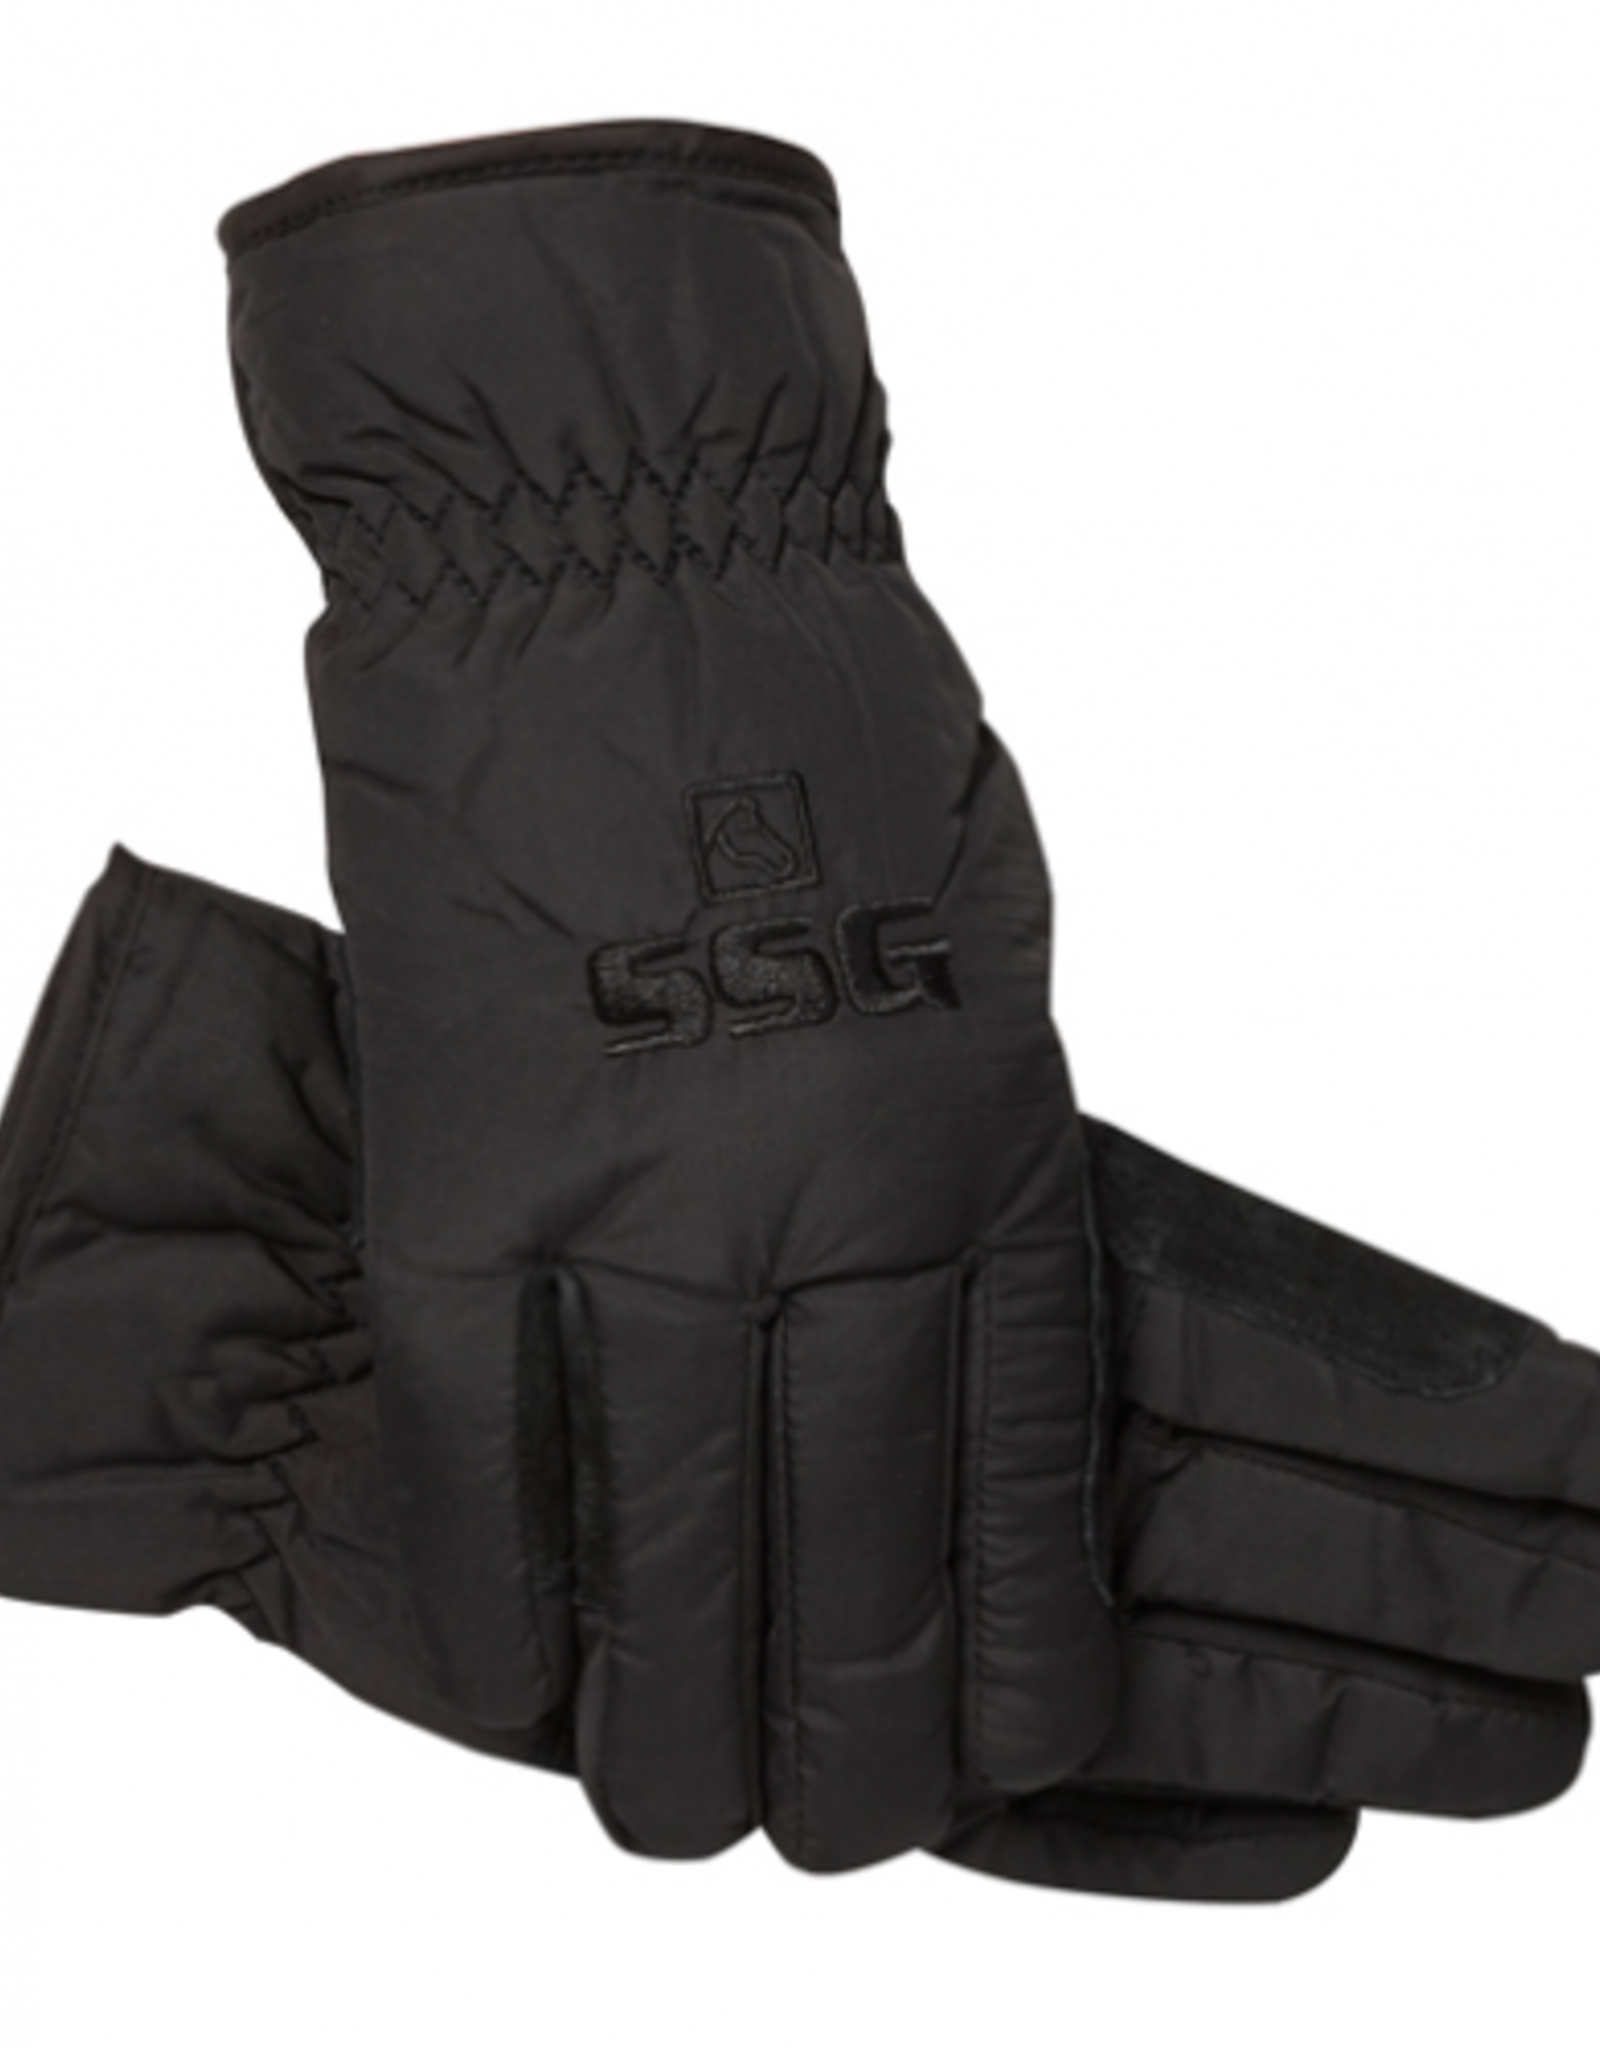 SSG Micro Fiber Econo Barn Glove Lined